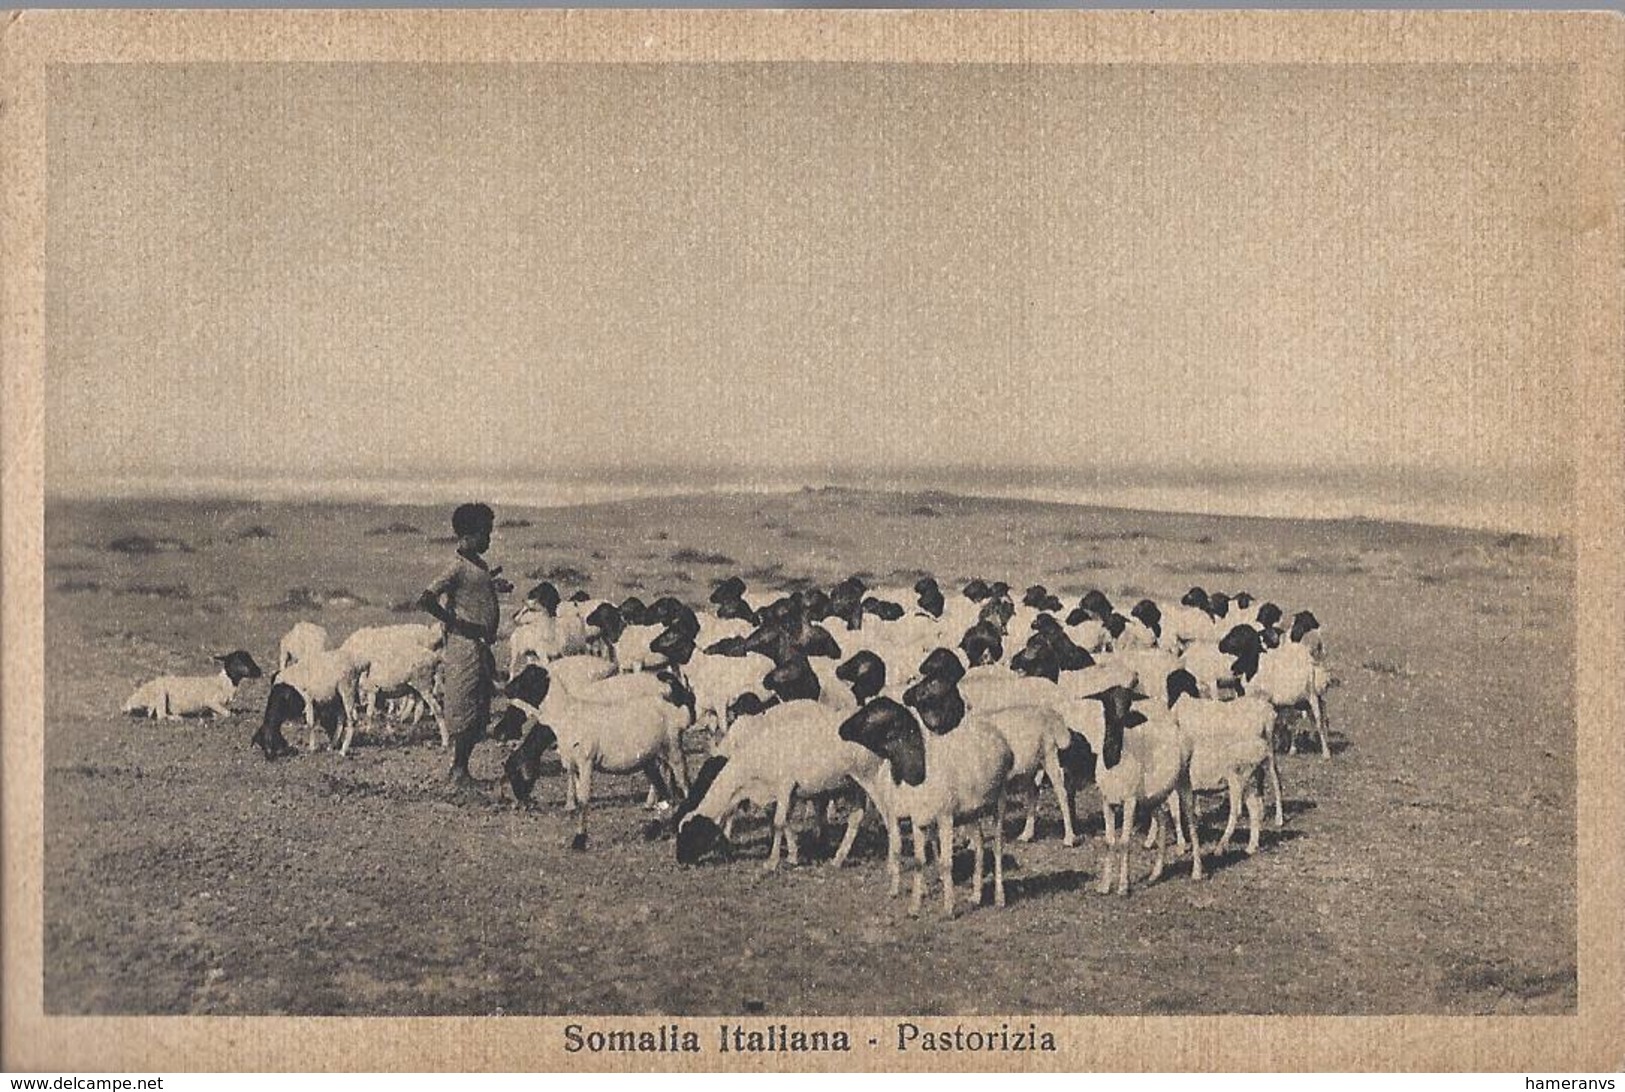 Somalia Italiana - Pastorizia - HP1432 - Somalia